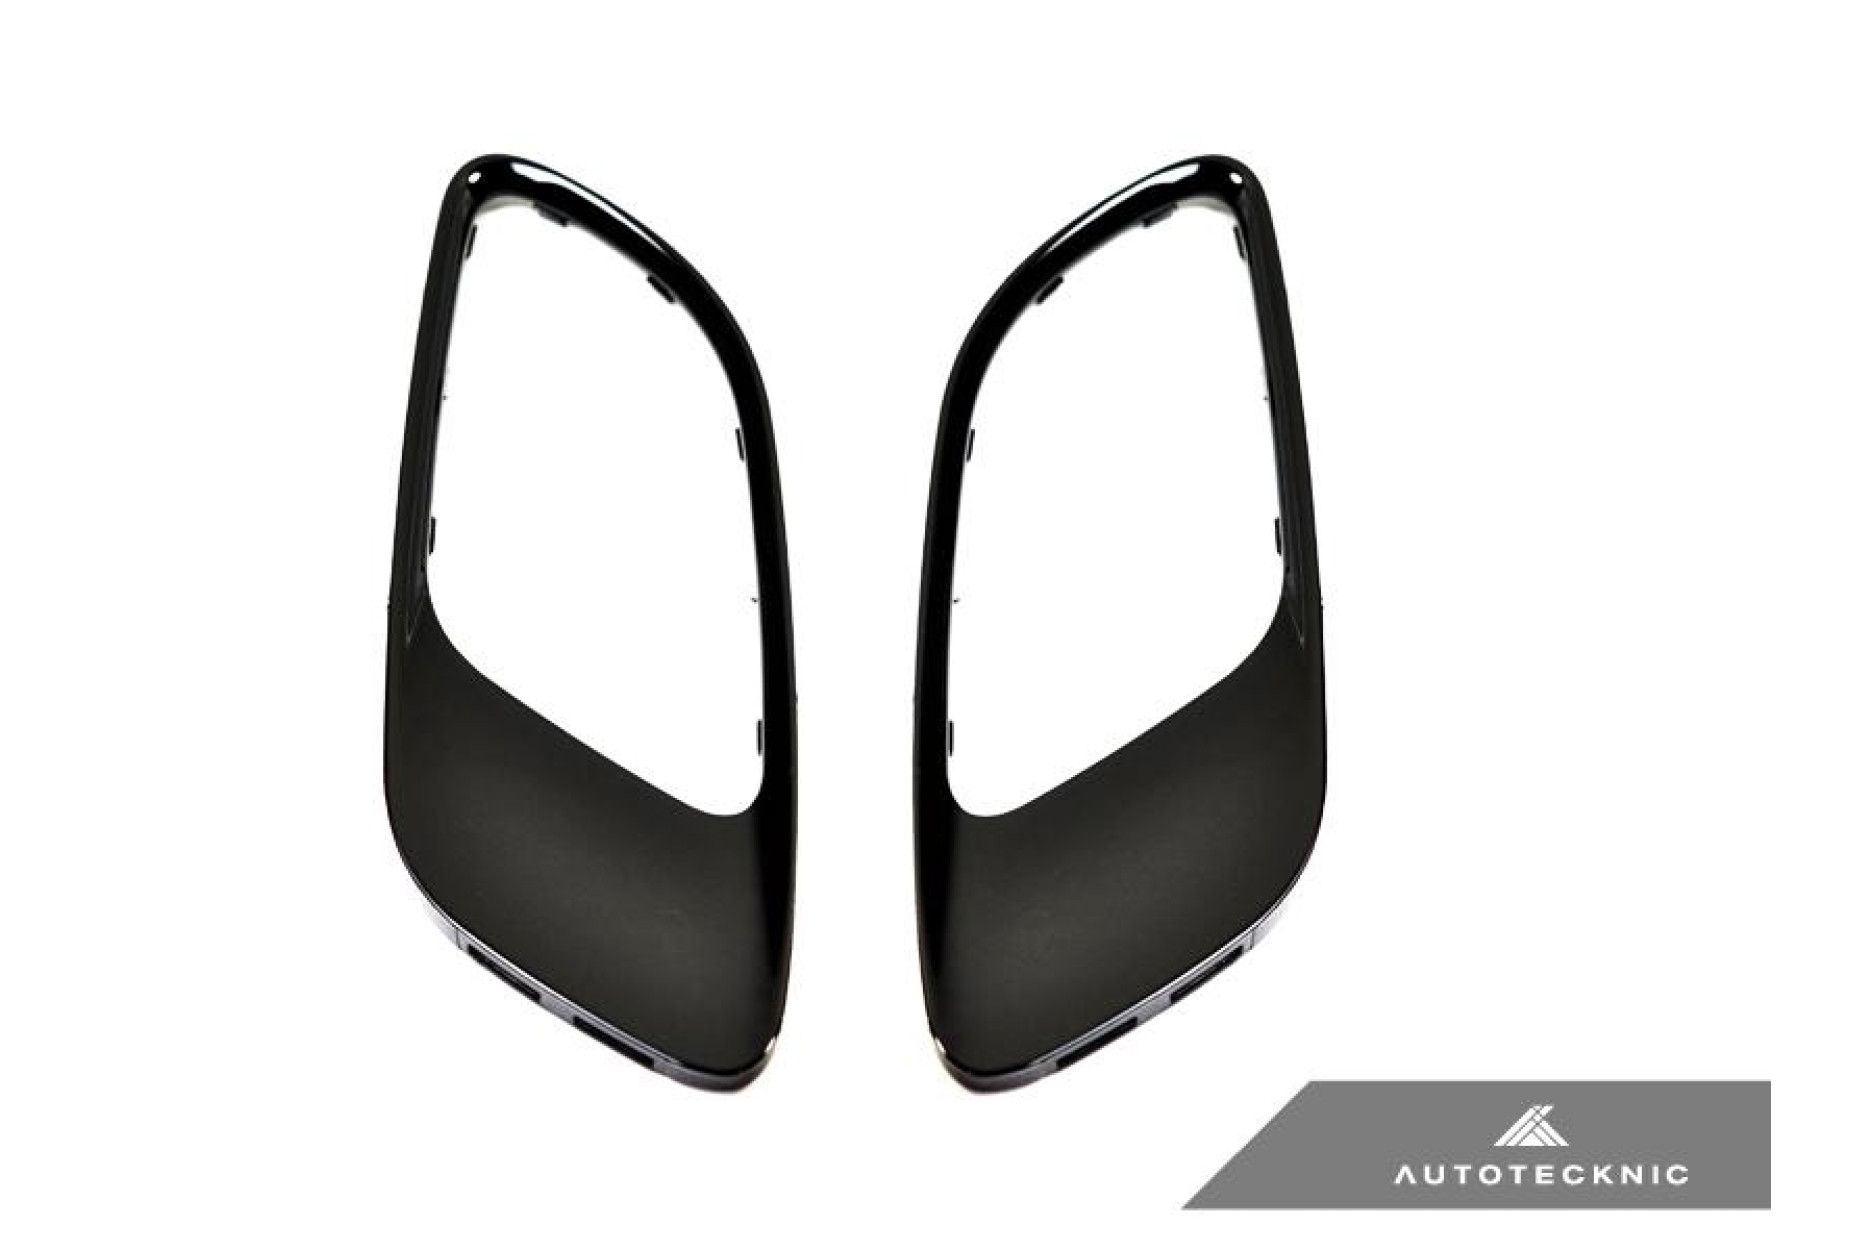 Autotecknic Glazing Black hodd-vents for BMW 3er E90|E92|E93 M3 (2) 